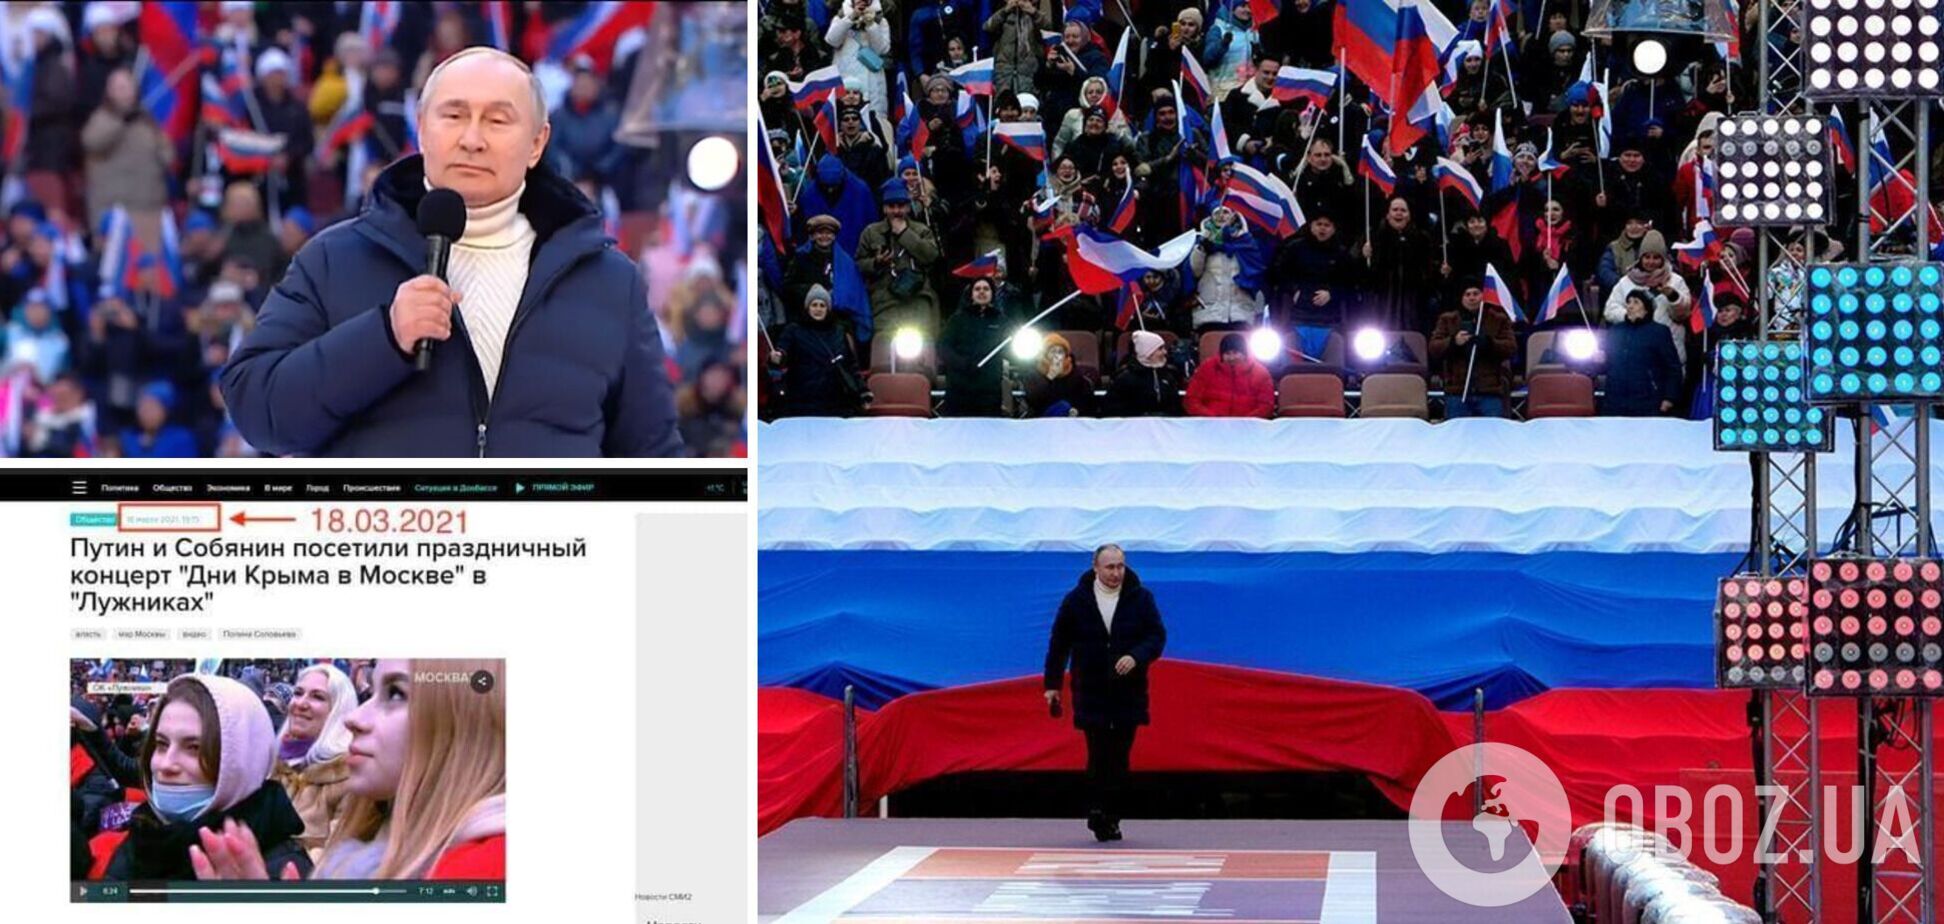 Решили не напрягаться: появилось еще одно доказательство фейкового 'концерта' в поддержку Путина в Москве. Фото